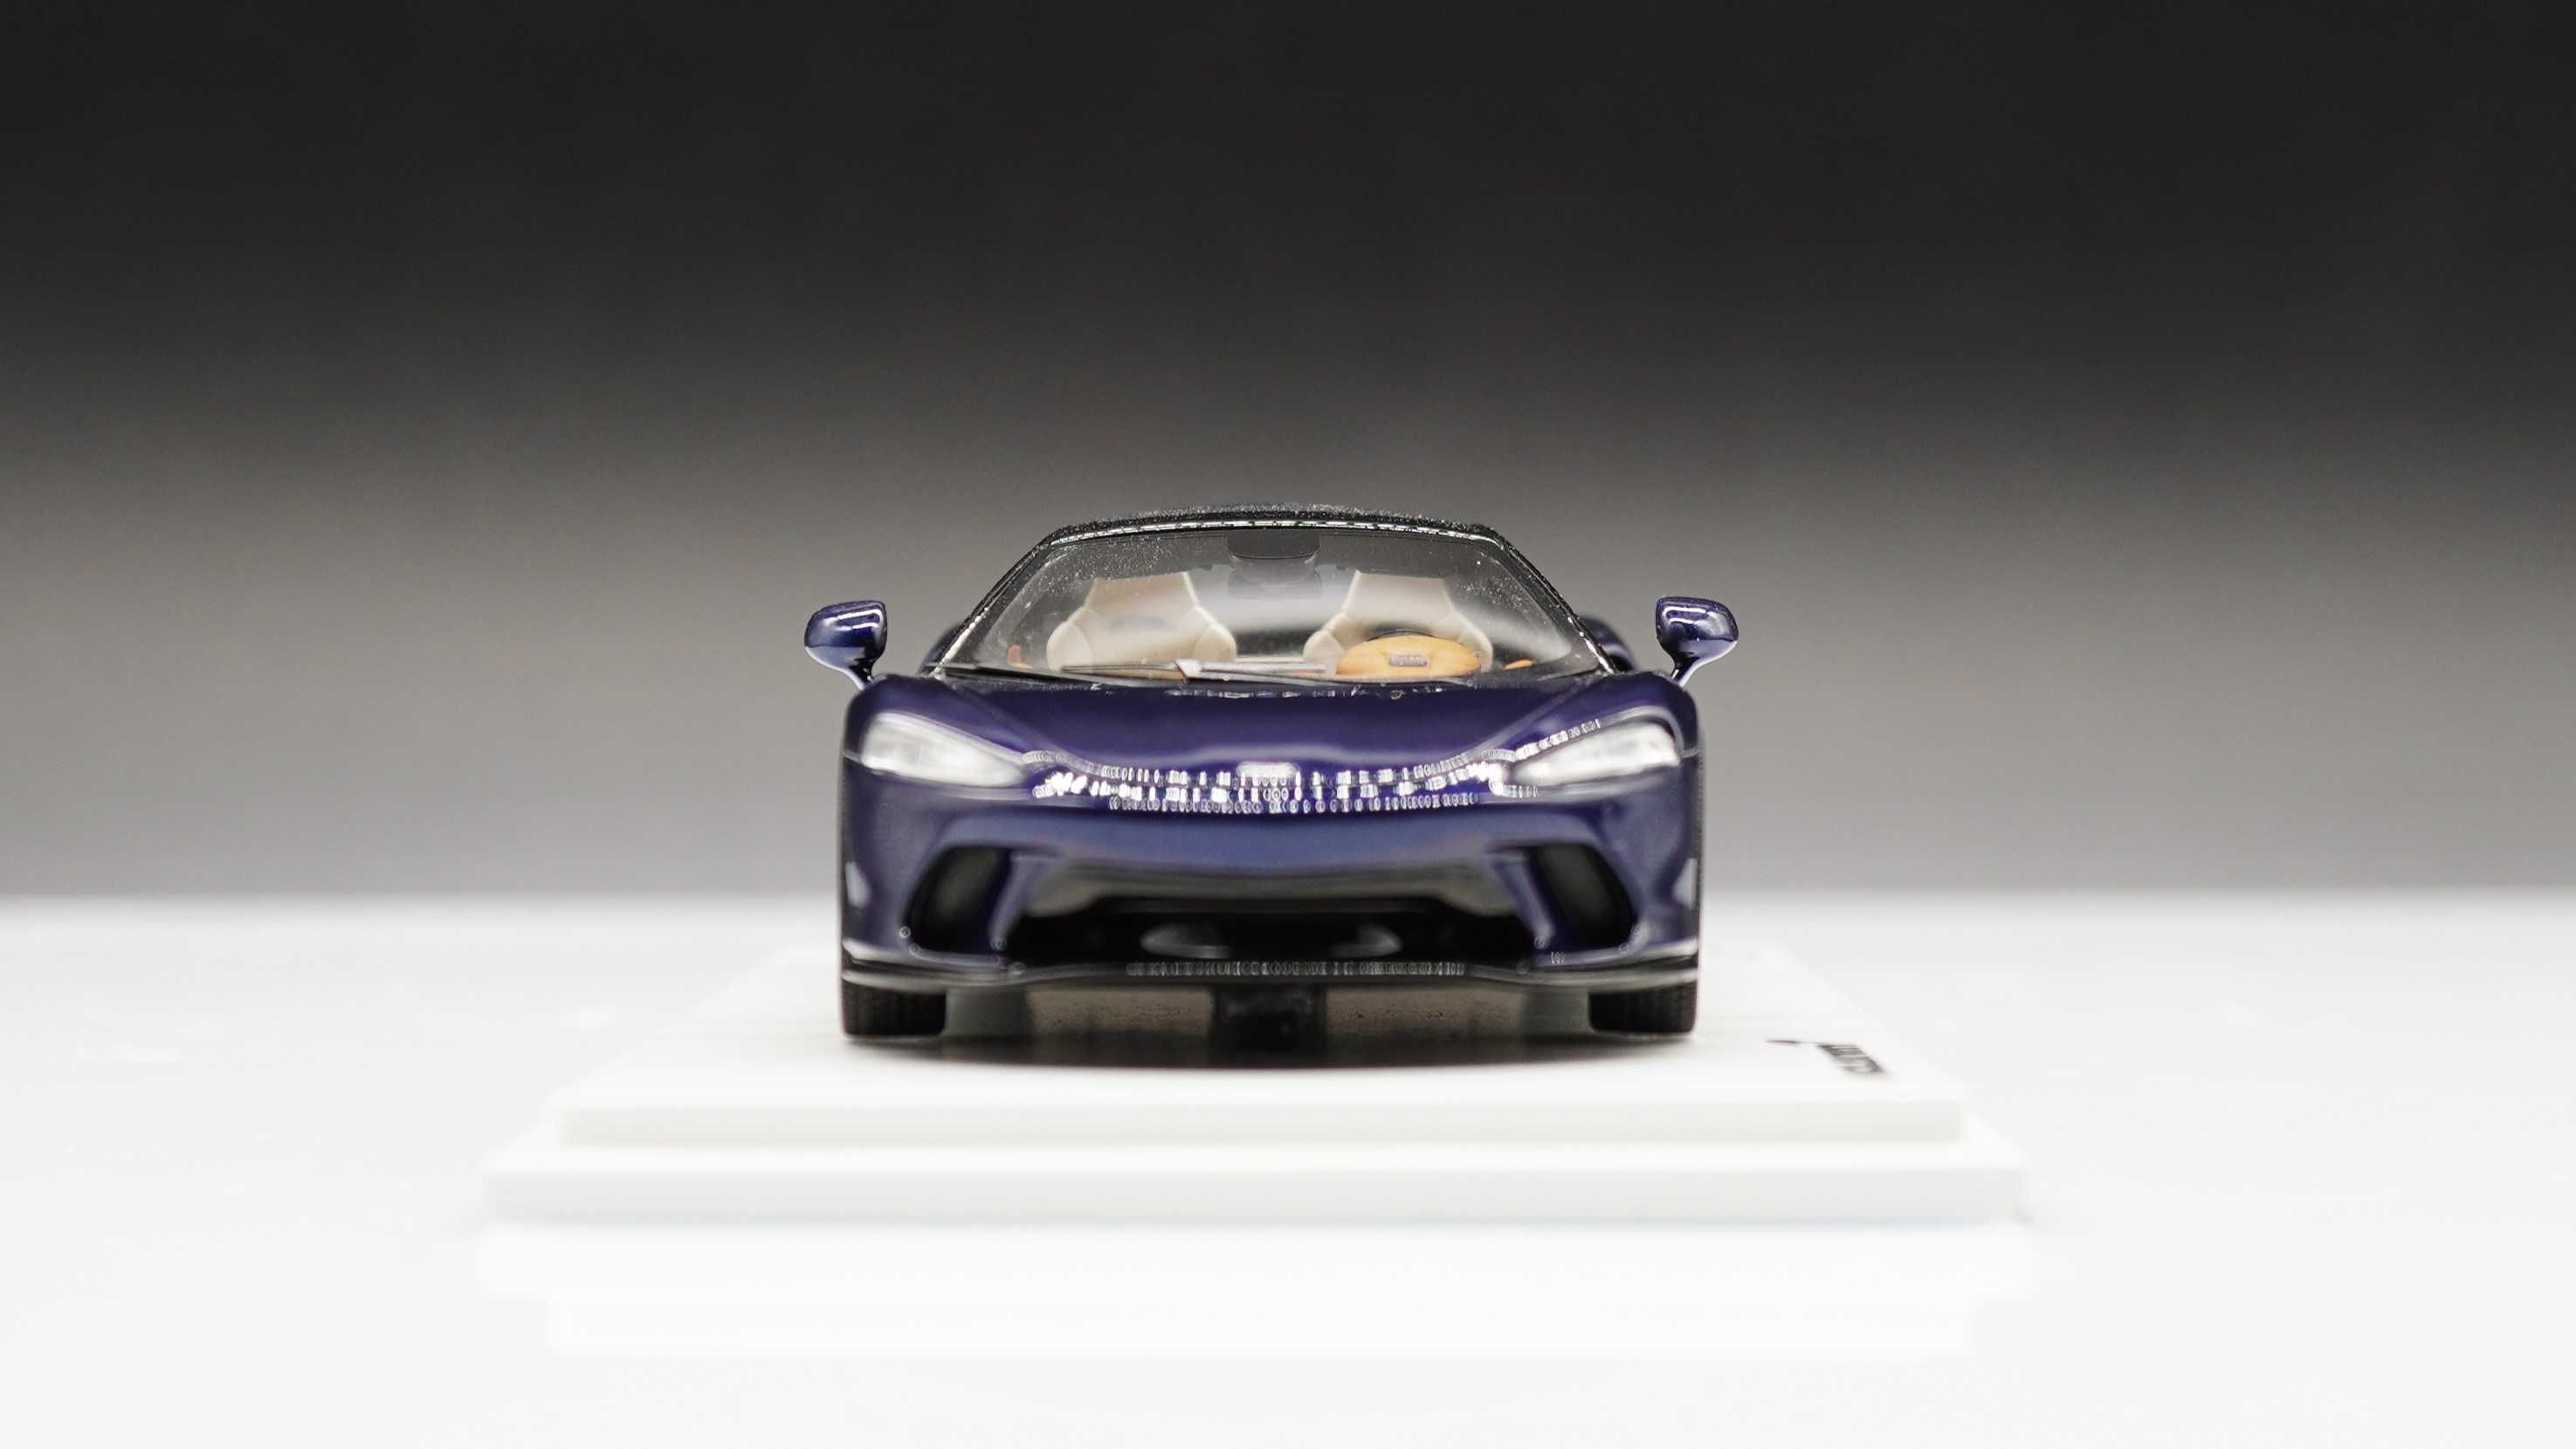 McLaren GT - Spark 1/43